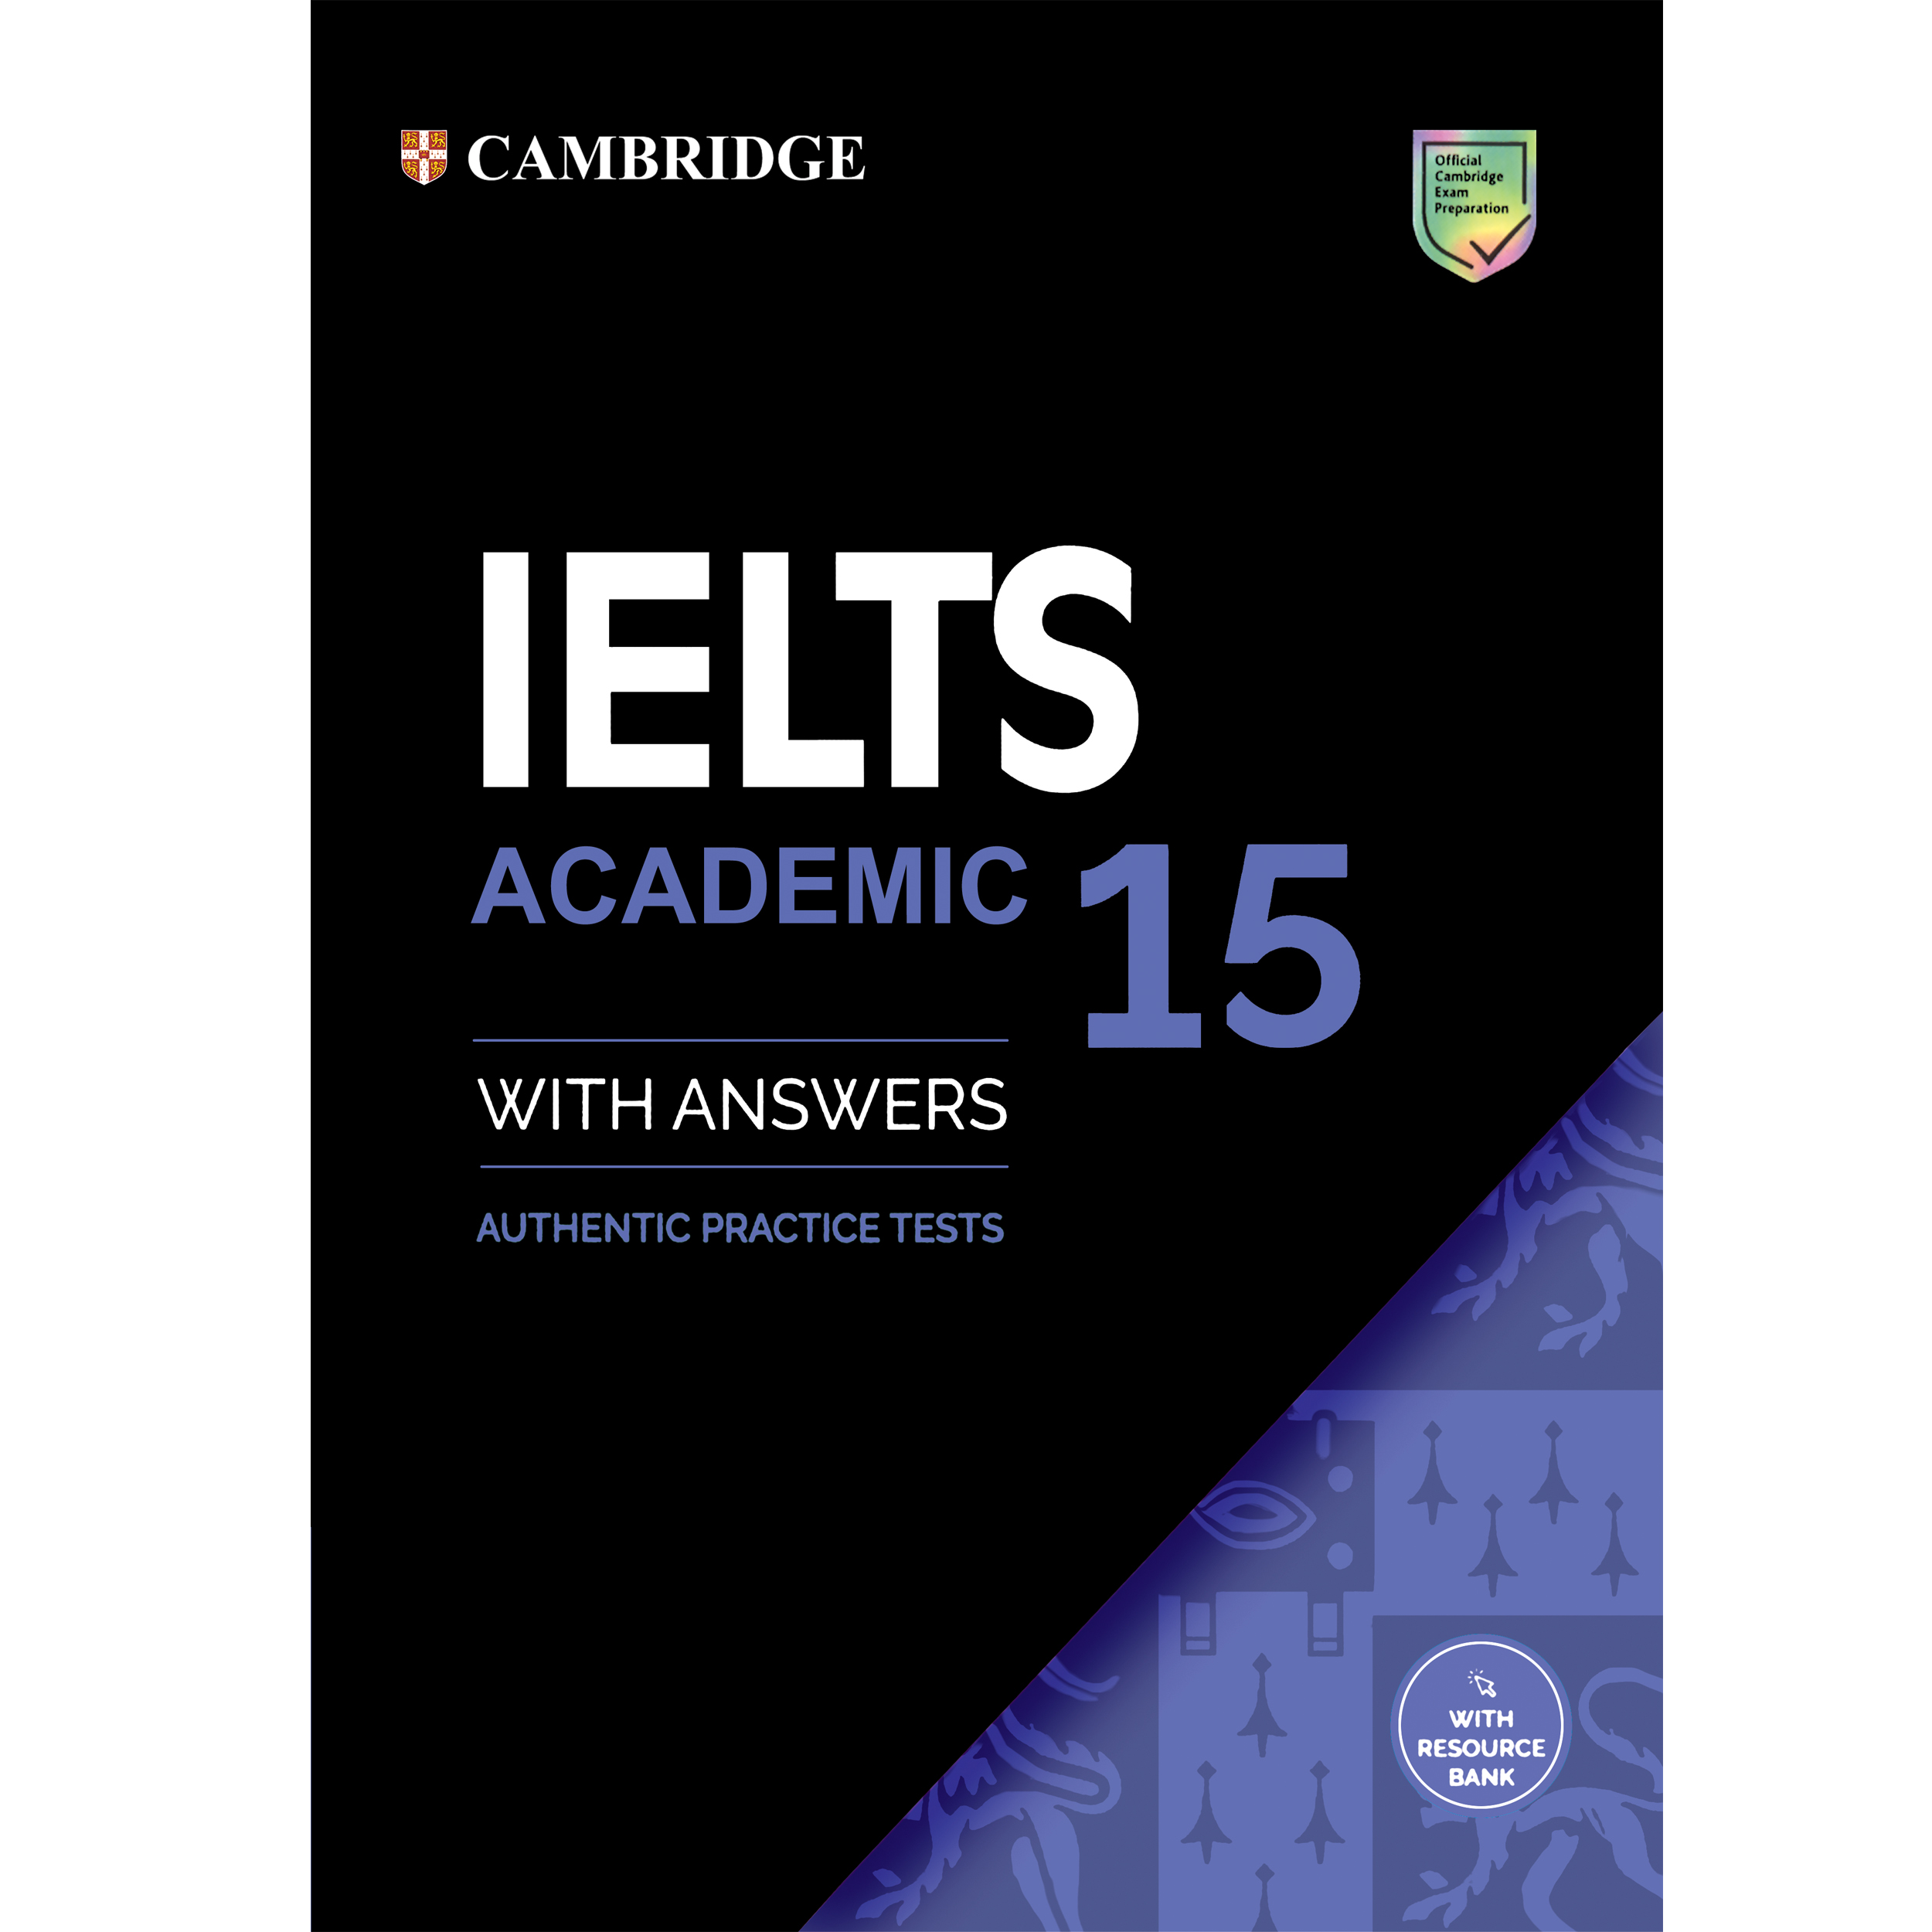 کتاب IELTS Cambridge 15 Academic اثر جمعی از نویسندگان انتشارات هدف نوین